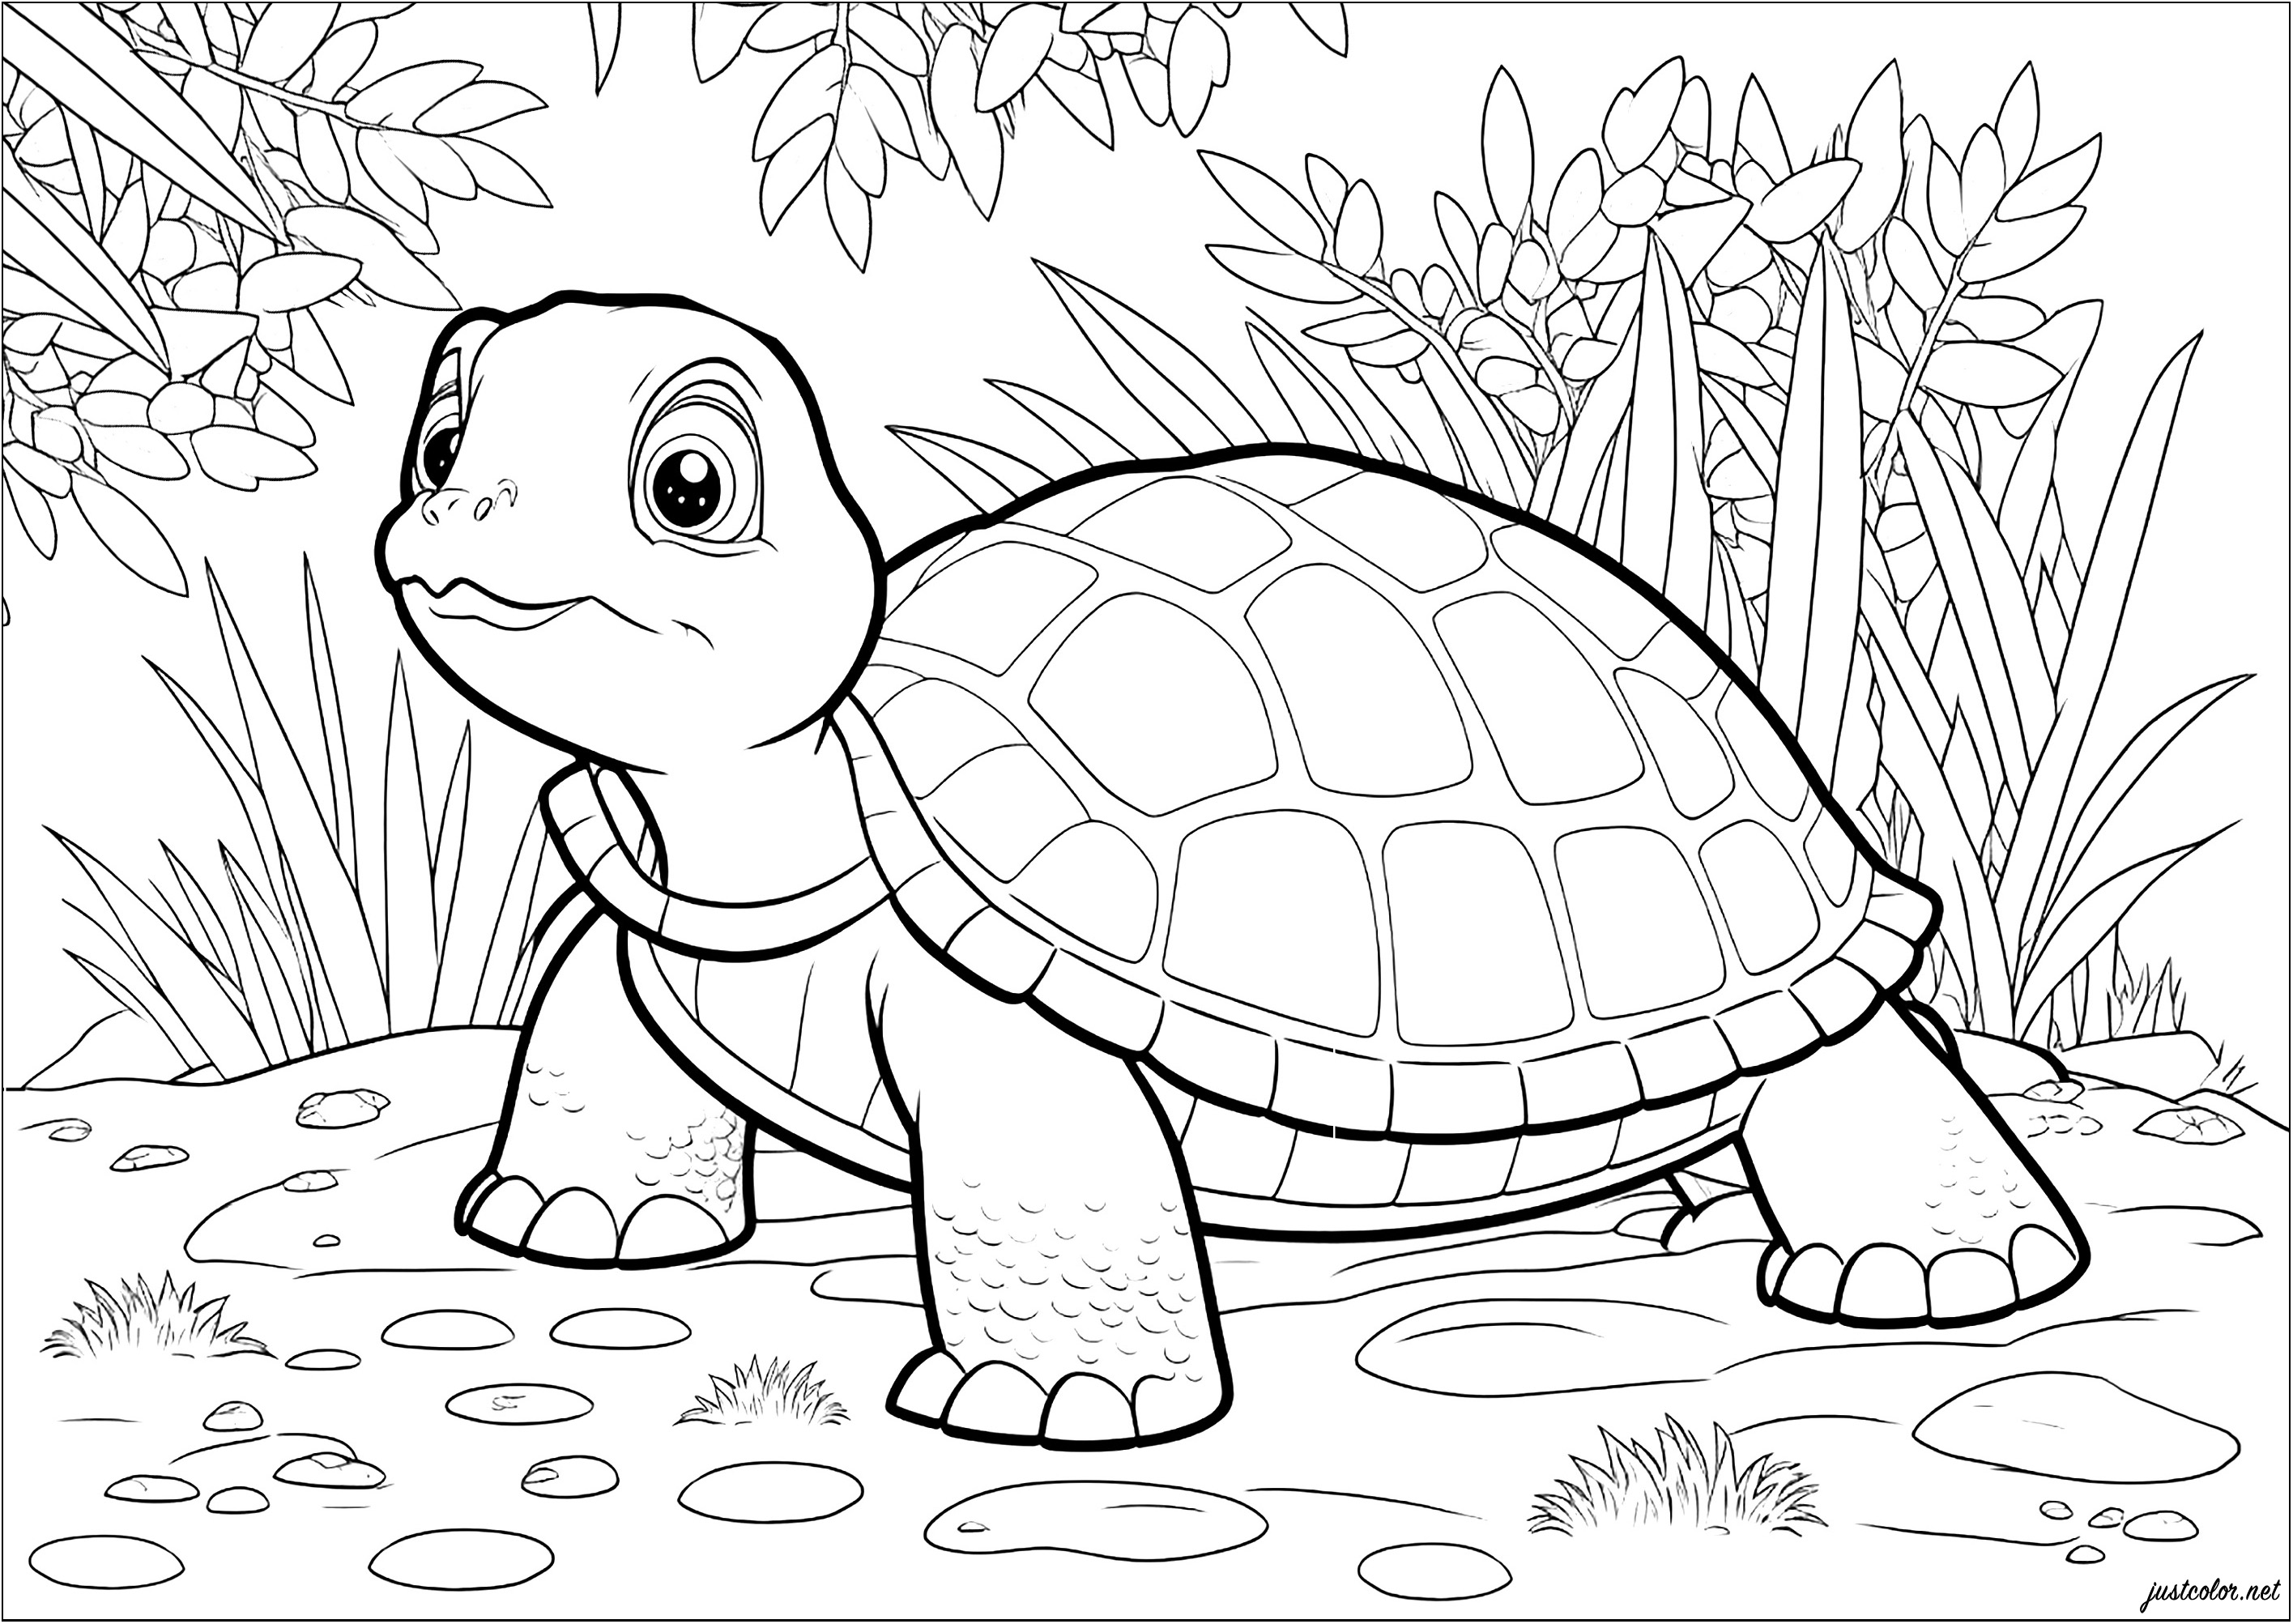 Joli coloriage d'une tortue dans son environnement naturel. Observe la détermination de la tortue dans sa lente progression vers son objectif.